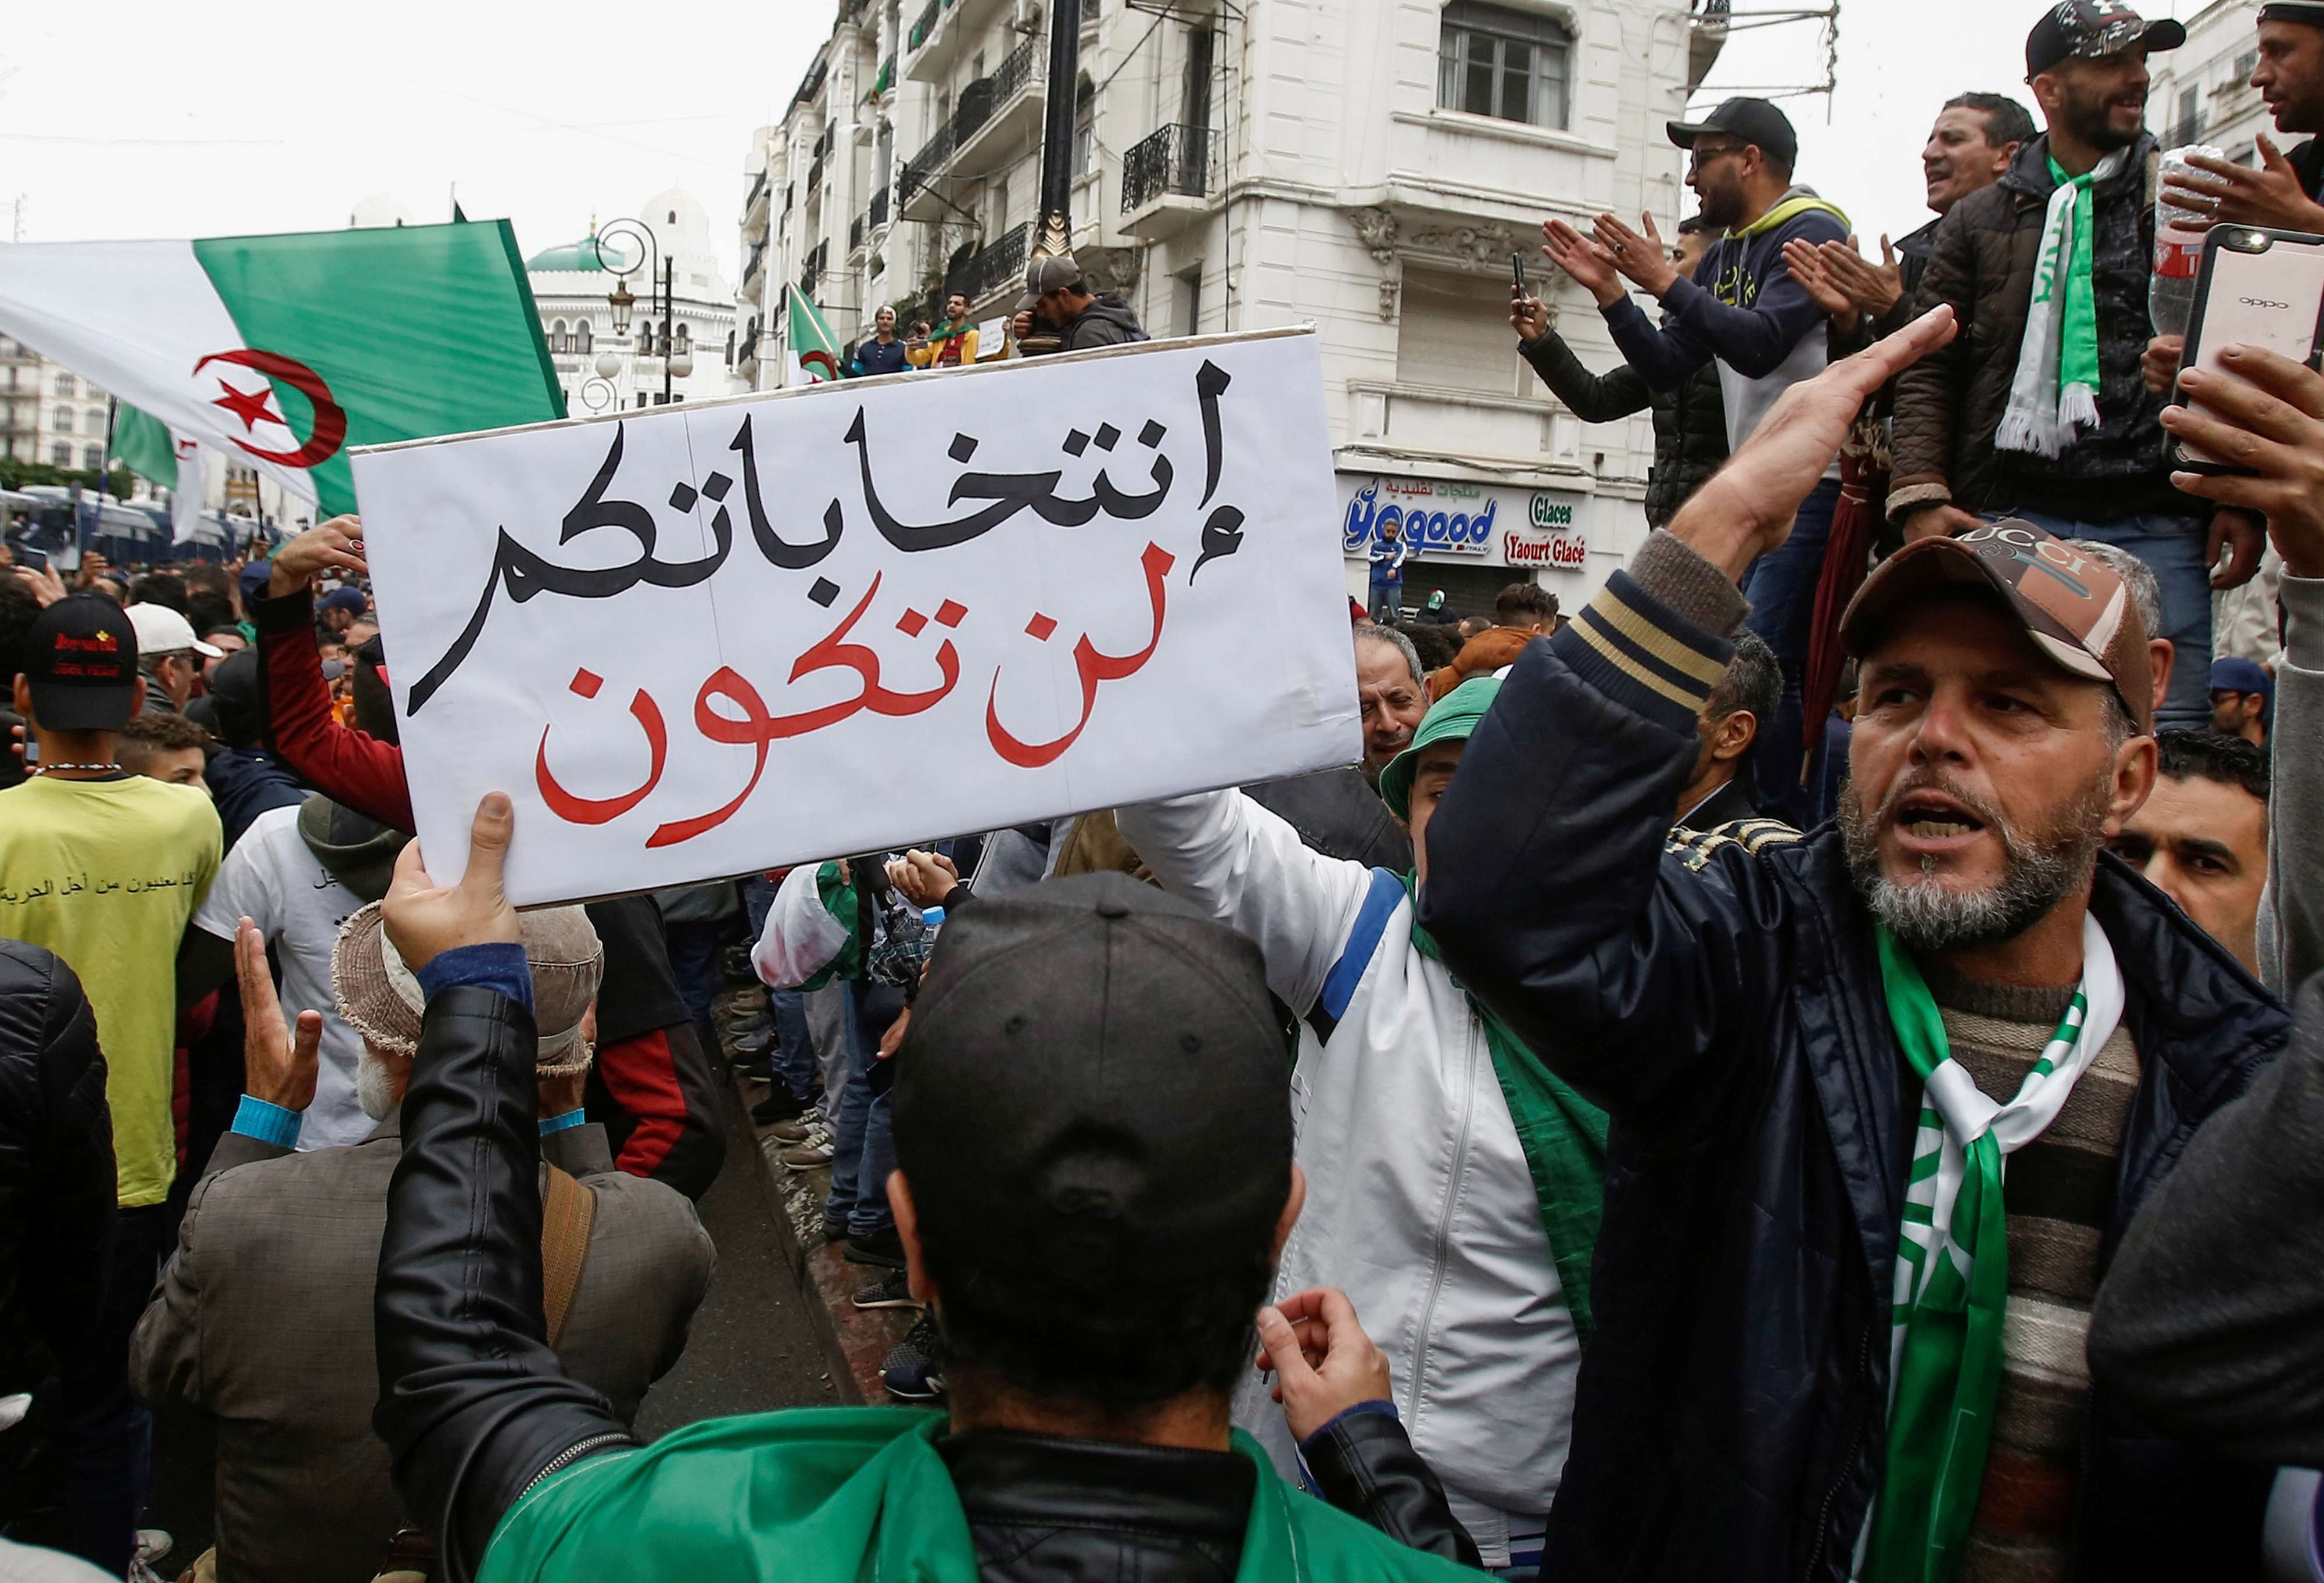 المستجدات في الجزائر تلوح بأزمة سياسية مع انطلاق الحملة الانتخابية